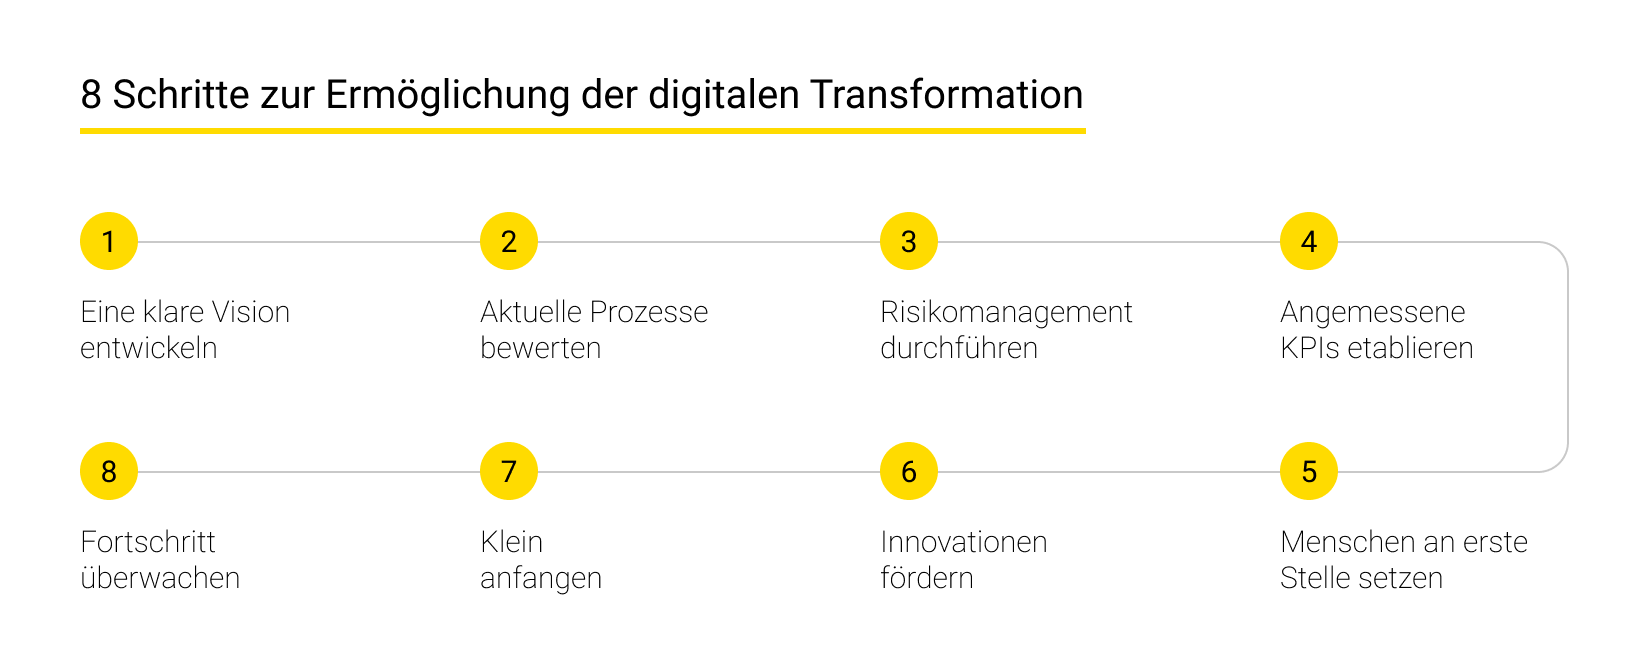 Die 8 Schritte zur Ermöglichung der digitalen Transformation